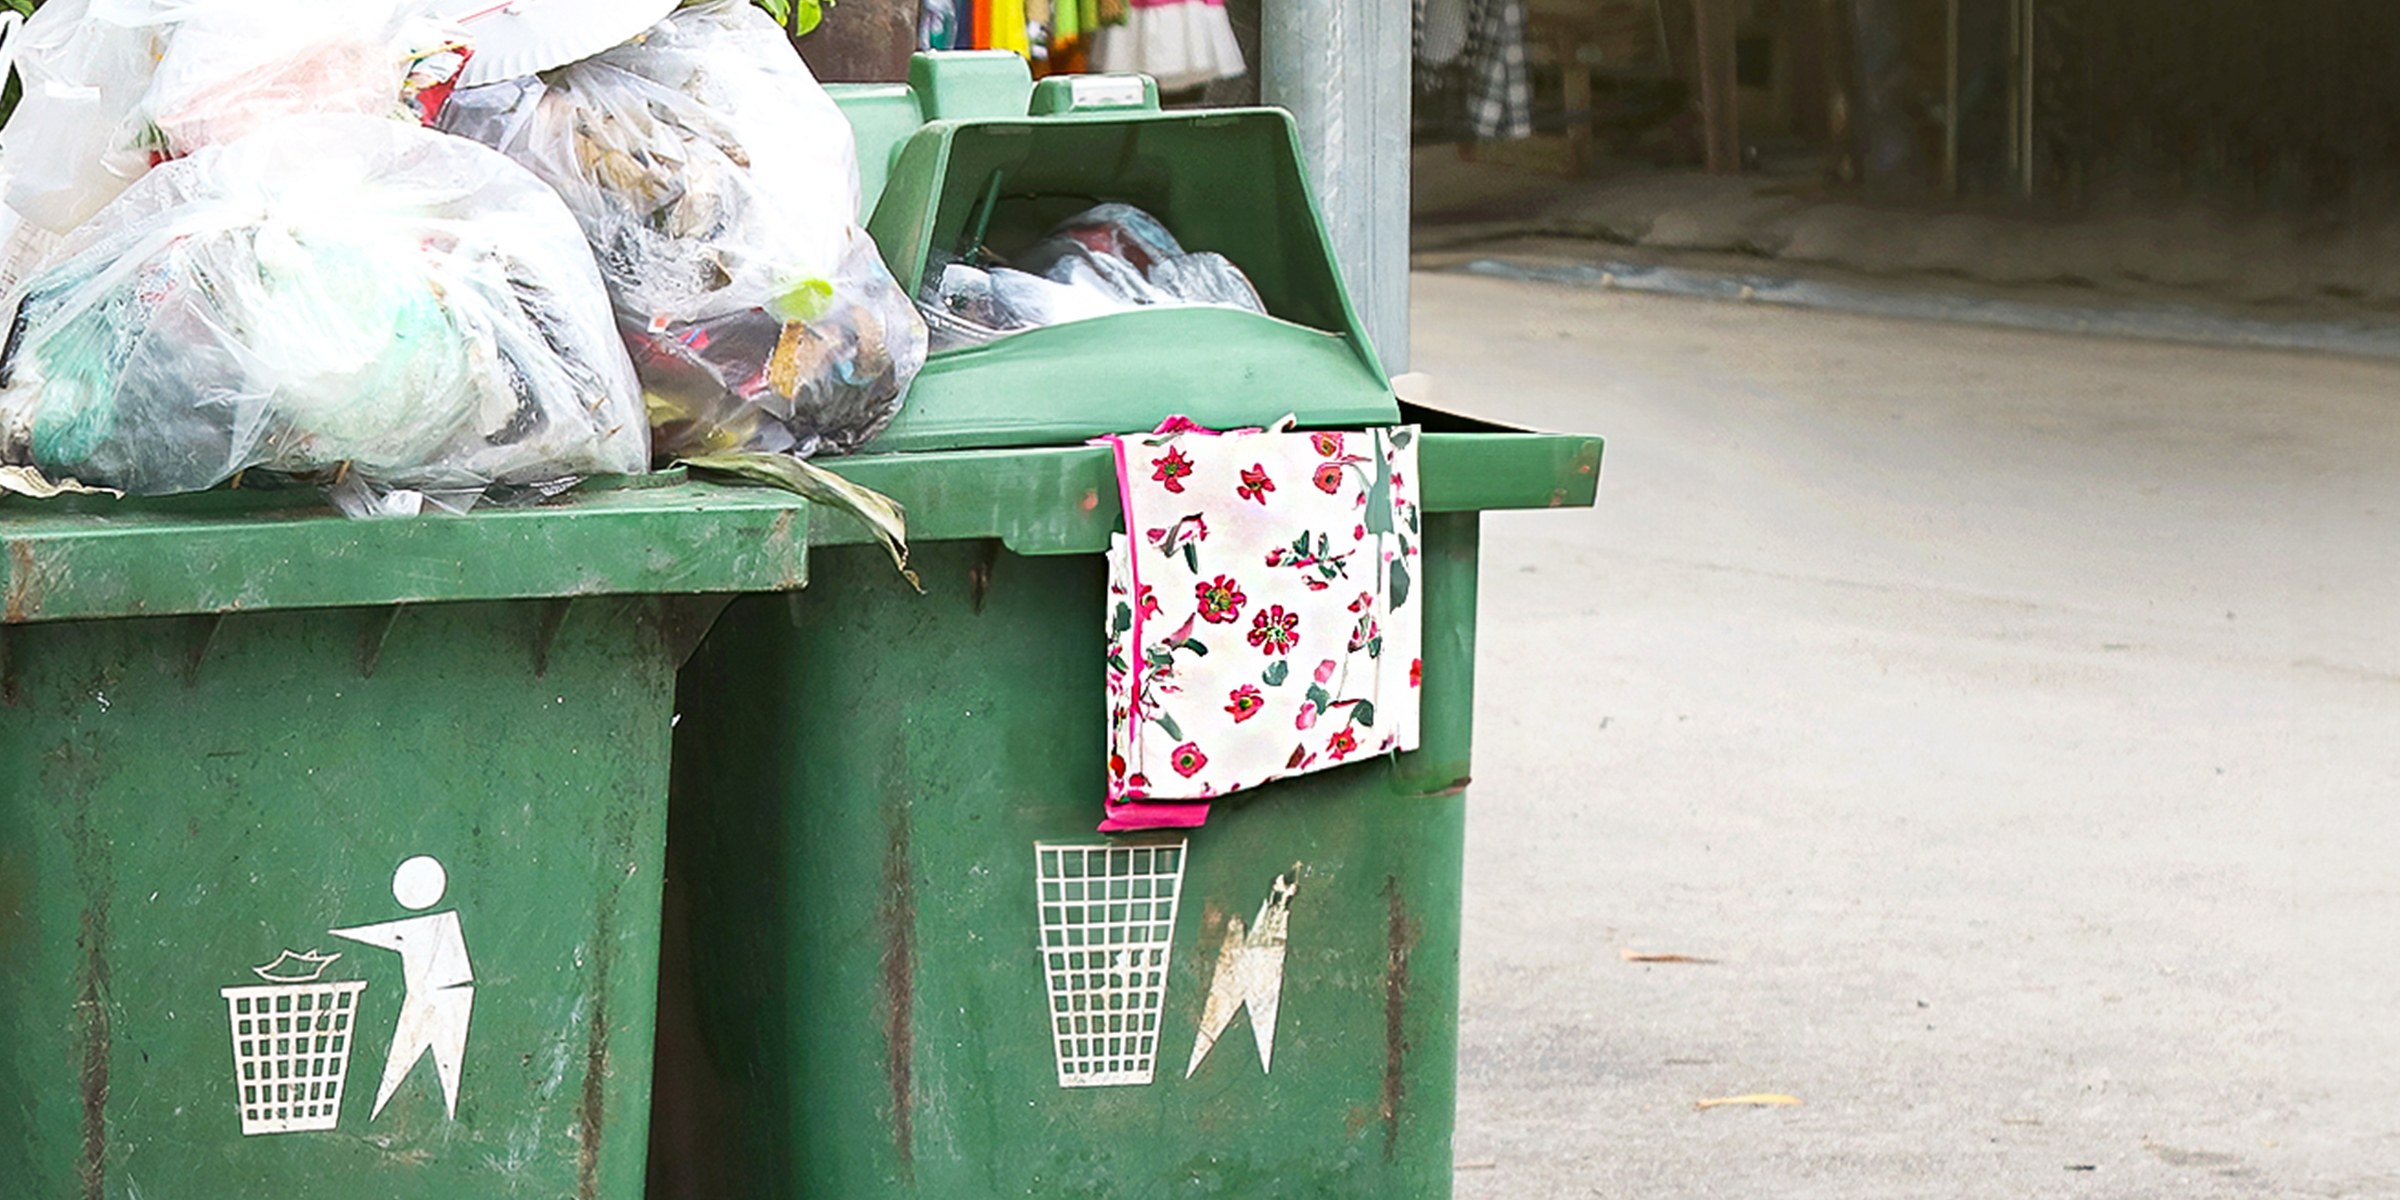 Un tablier fleuri dans une poubelle | Source : Shutterstock